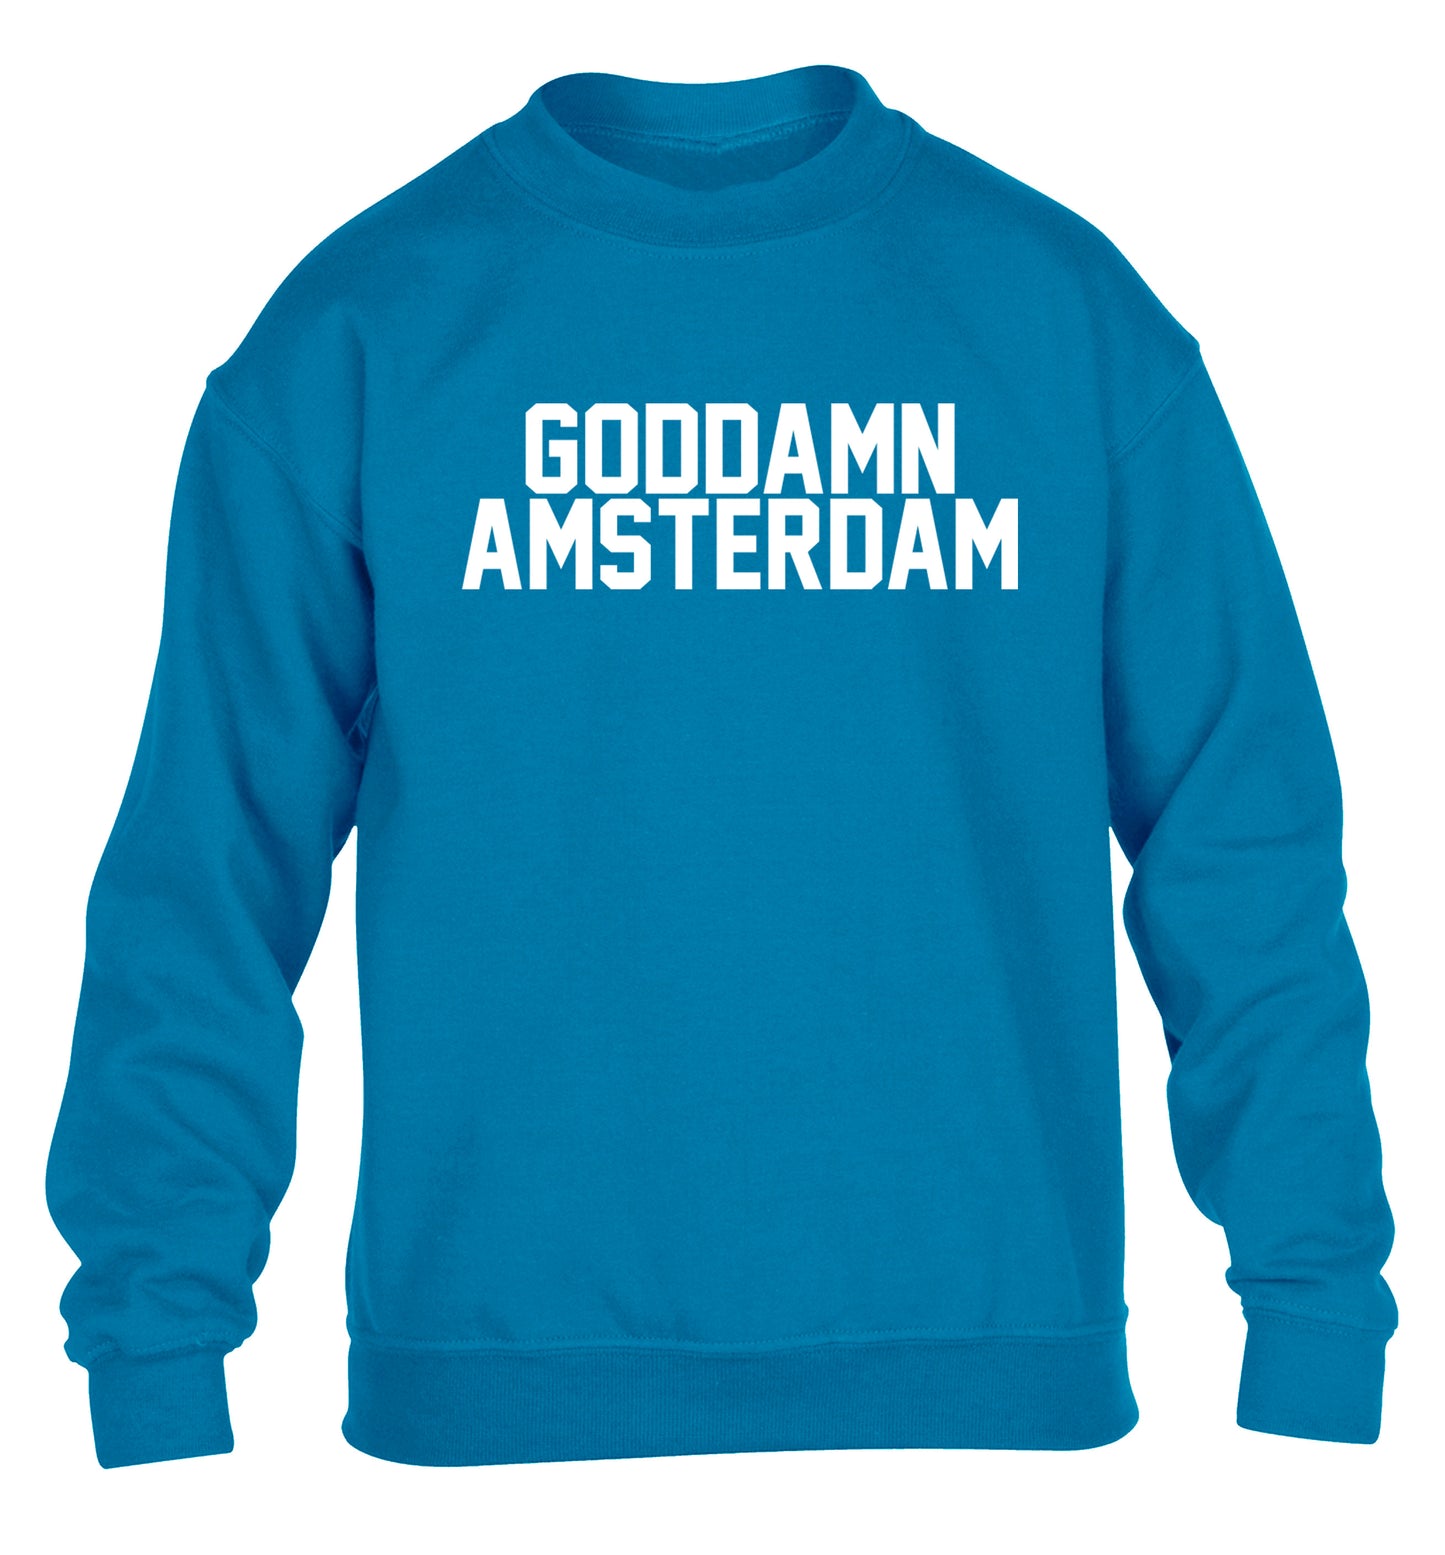 Goddamn Amsterdam children's blue sweater 12-13 Years